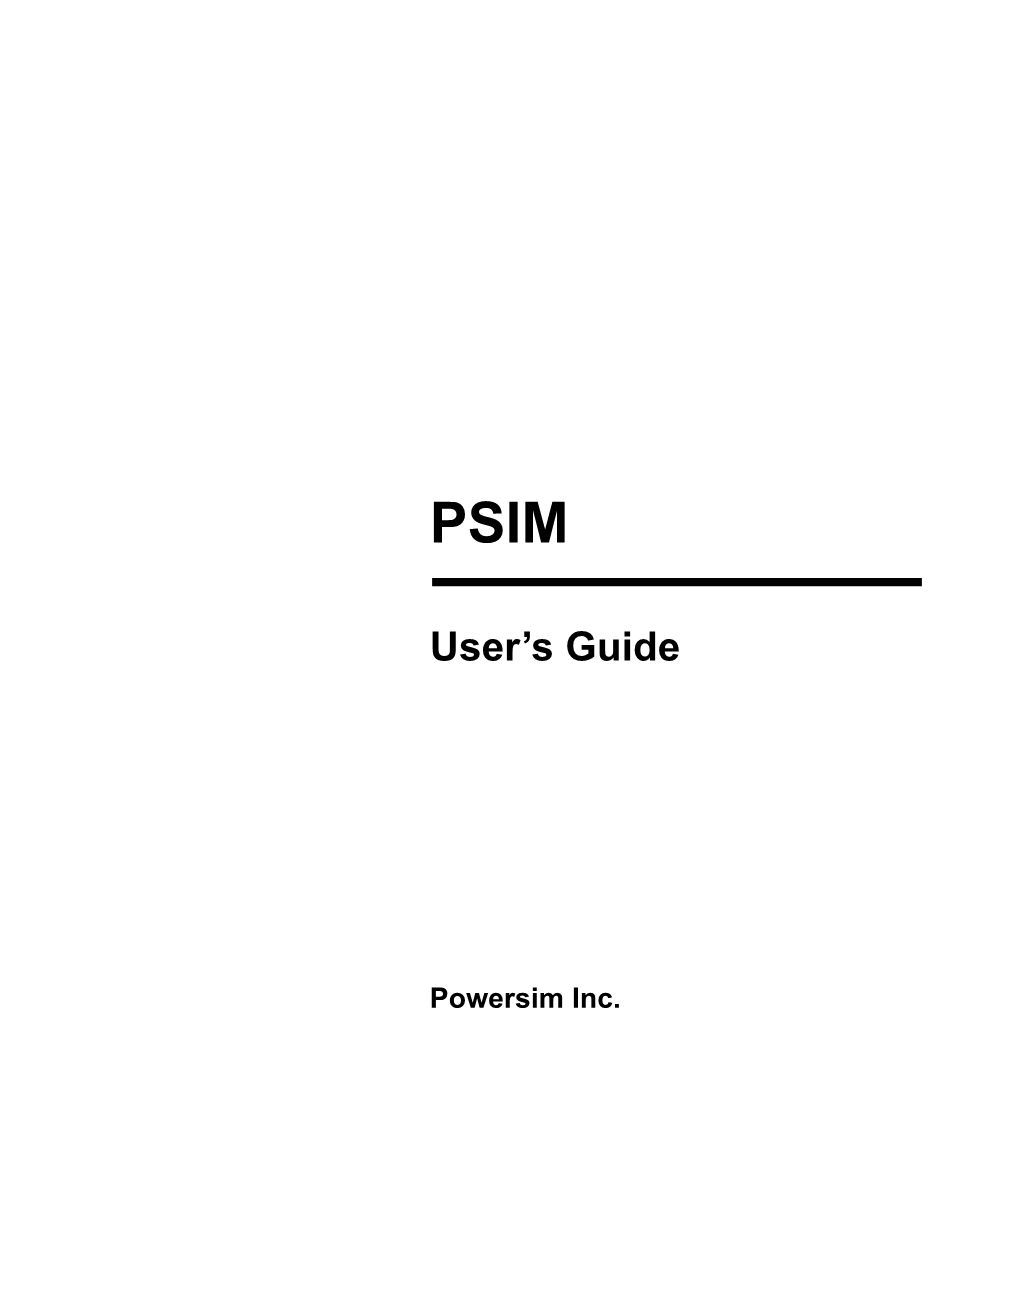 PSIM User's Guide